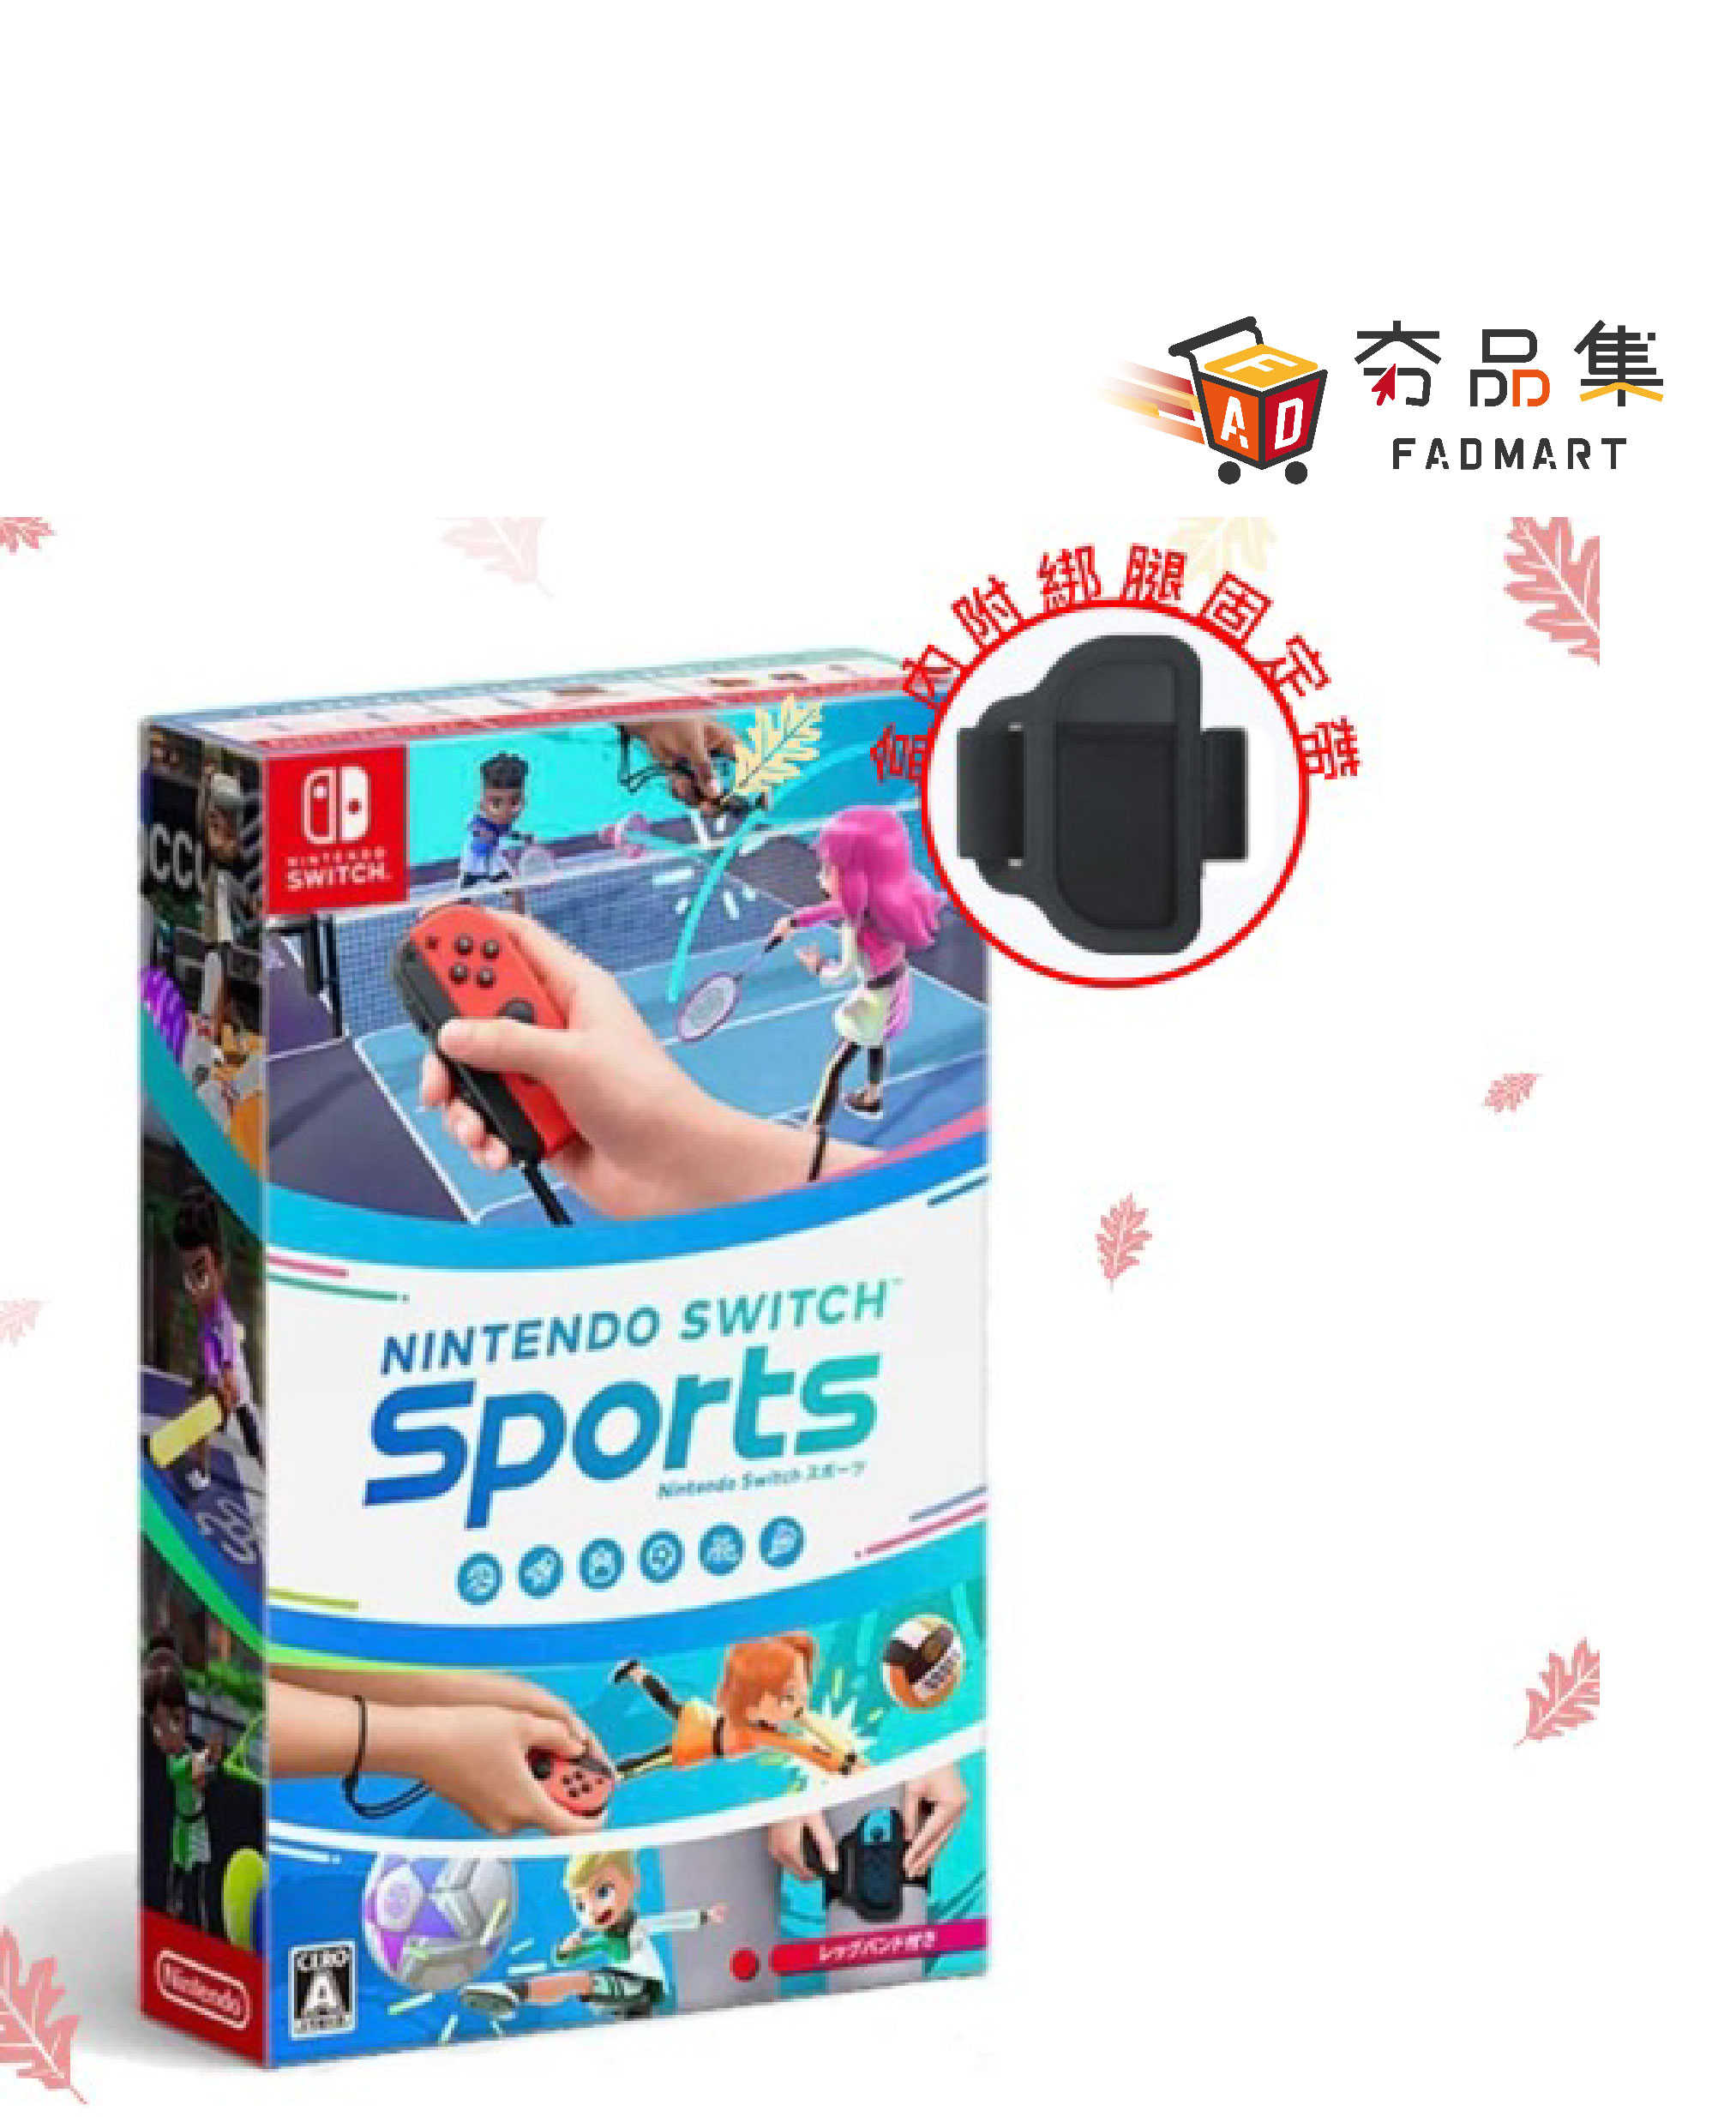 【夯品集】Nintendo Switch 運動 sports 台灣公司貨-中文版(618限時特賣下殺)